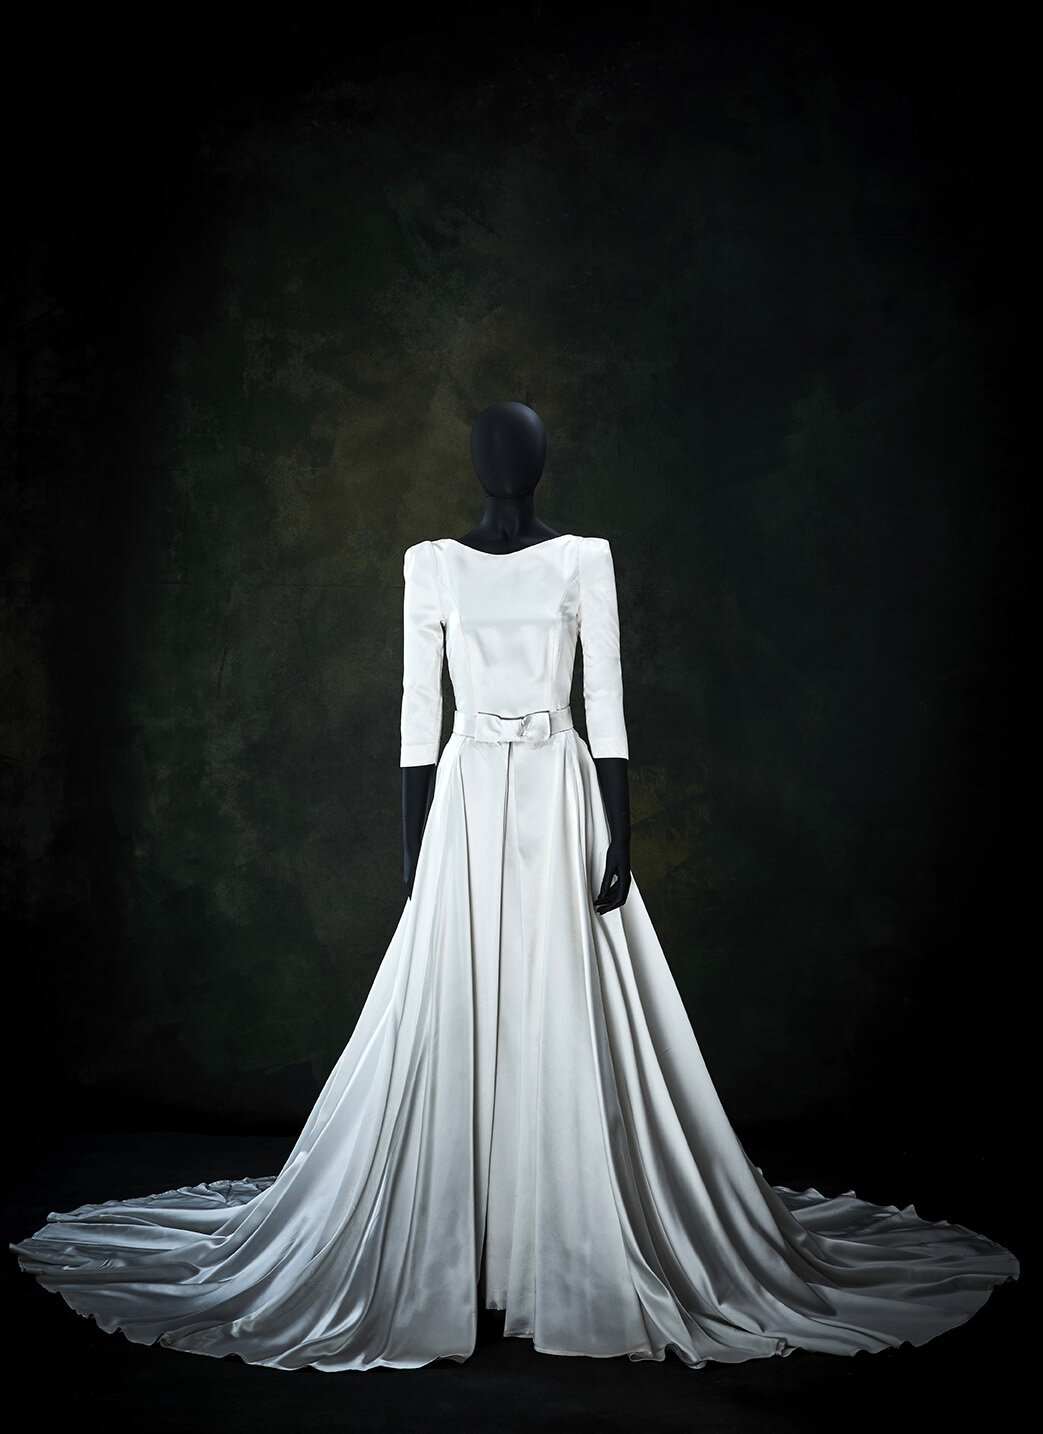 Brautkleid mit separatem Überrock klassisch elegant (Kopie)